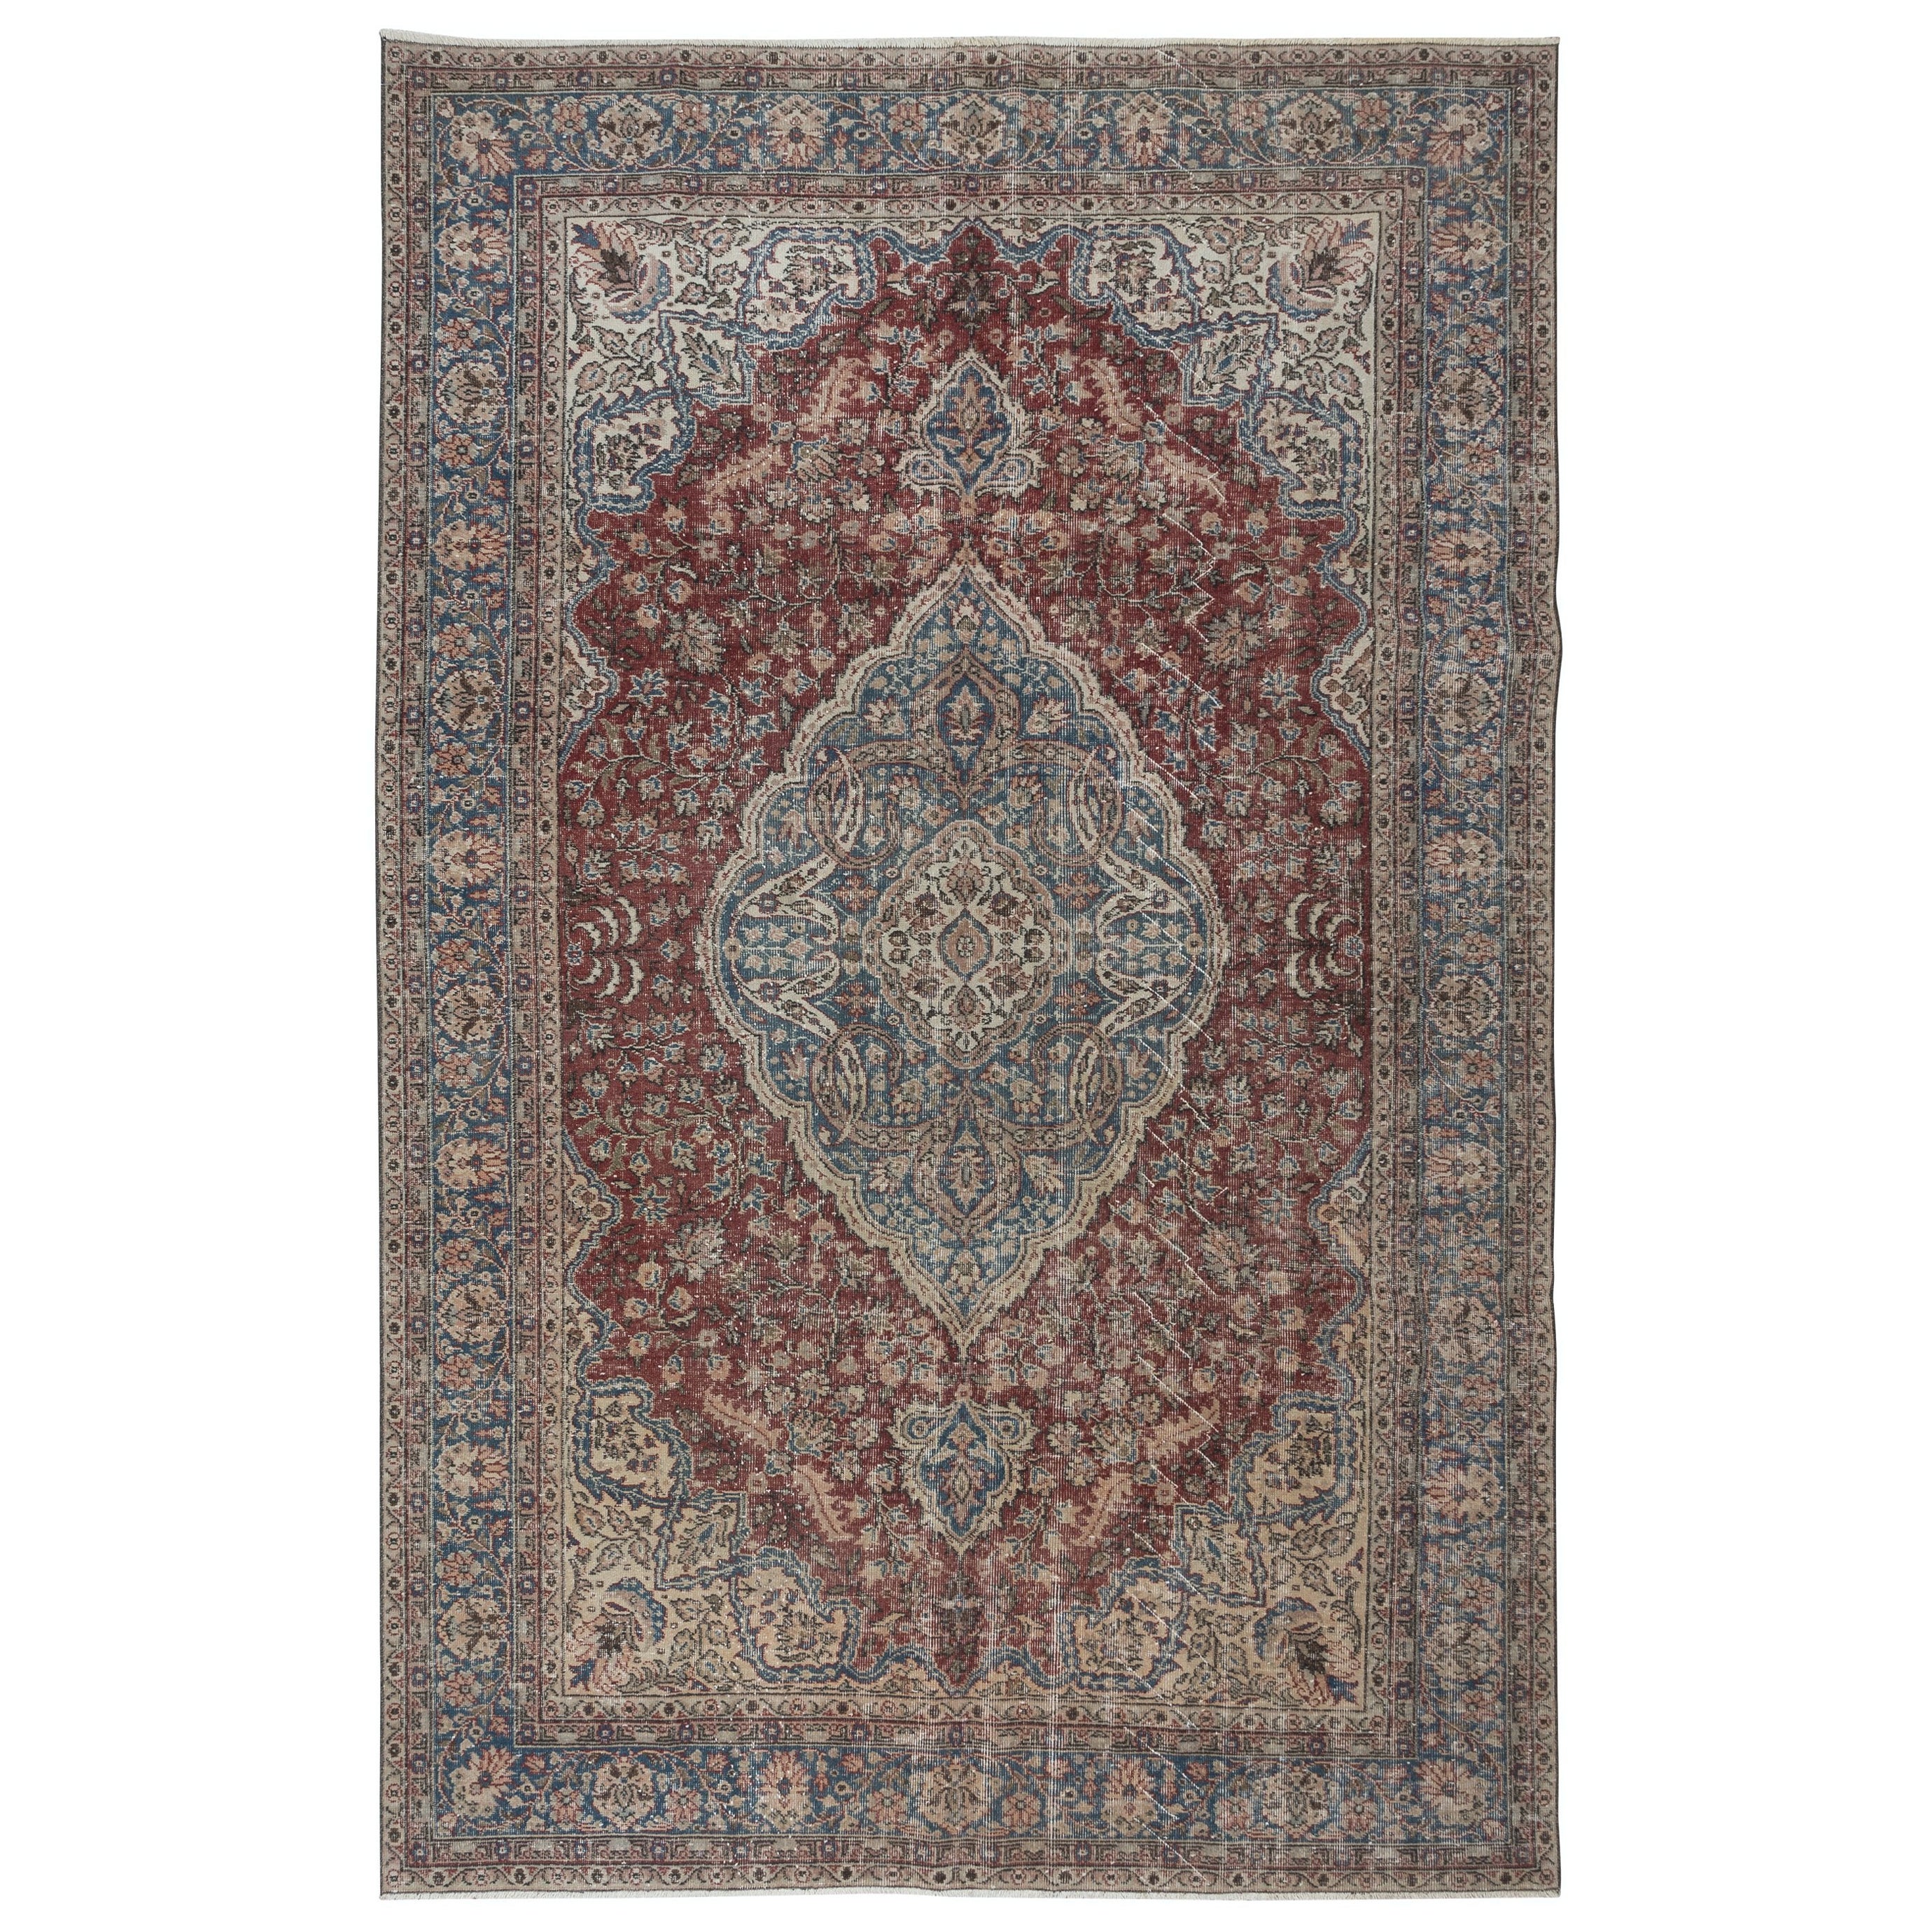 6.8x10.5 Ft Traditional Ottoman Rug, Circa 1950, Handmade Turkish Vintage Carpet For Sale